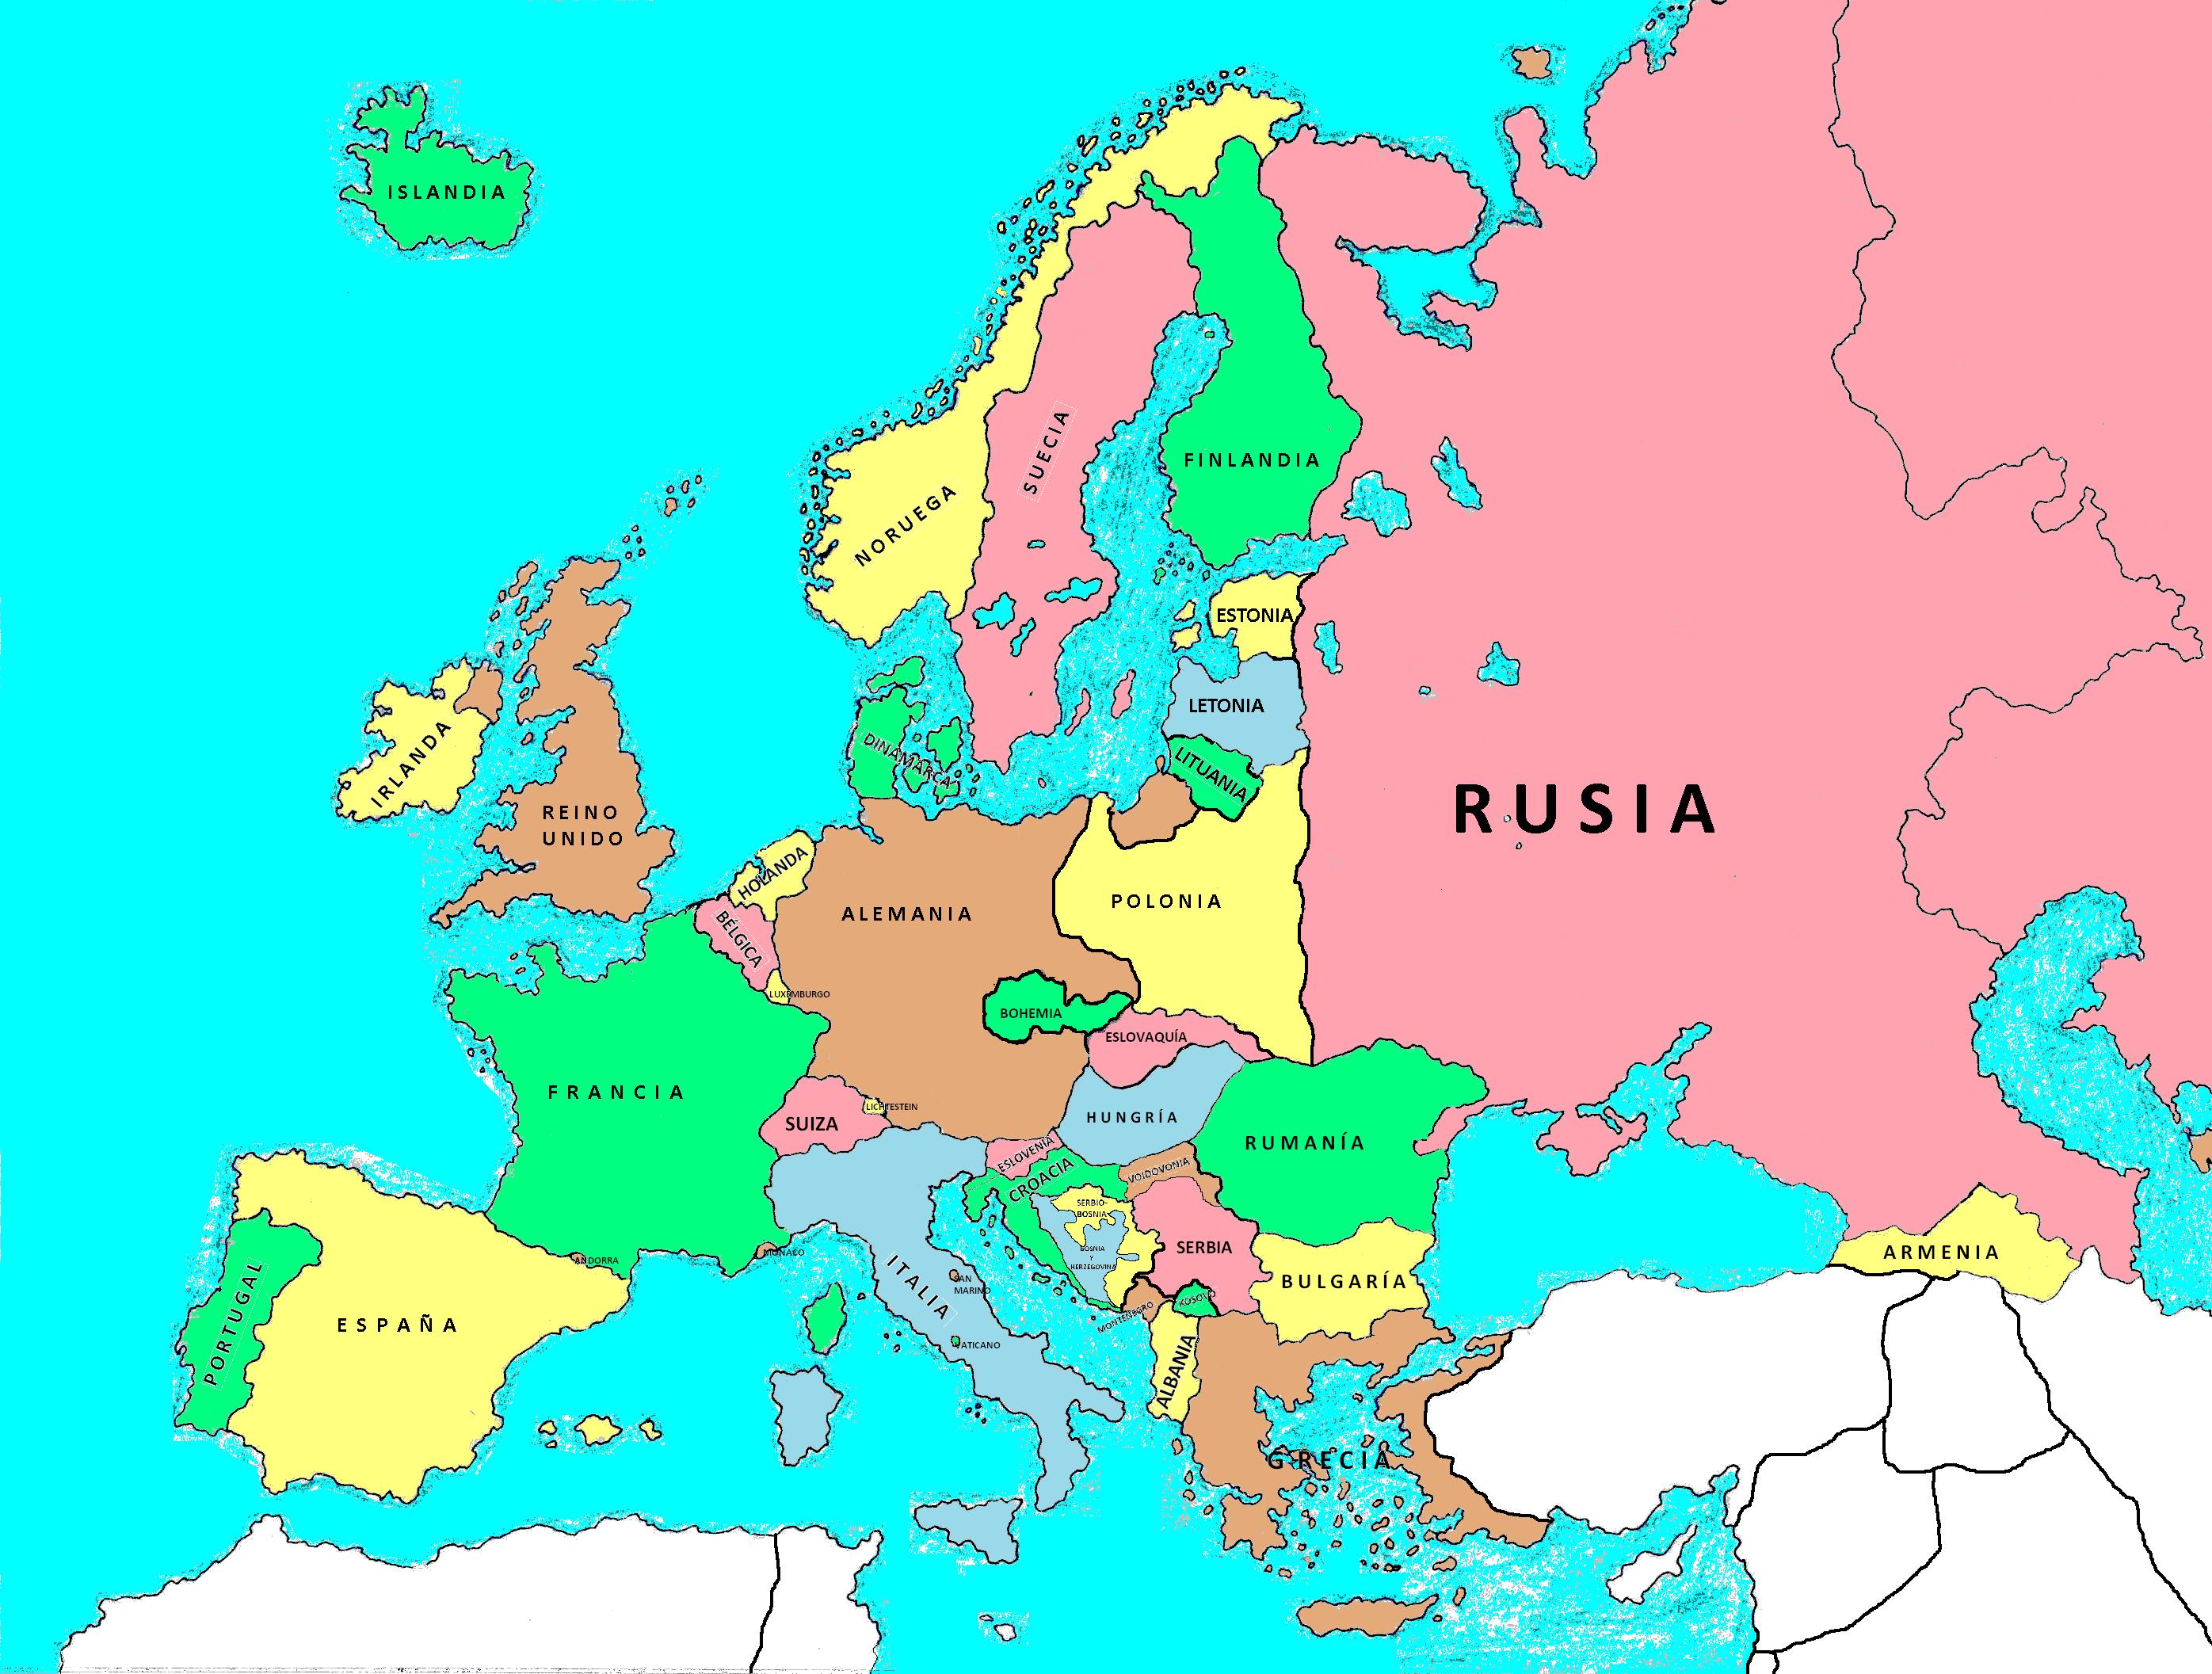 Donde esta armenia en el mapa de europa